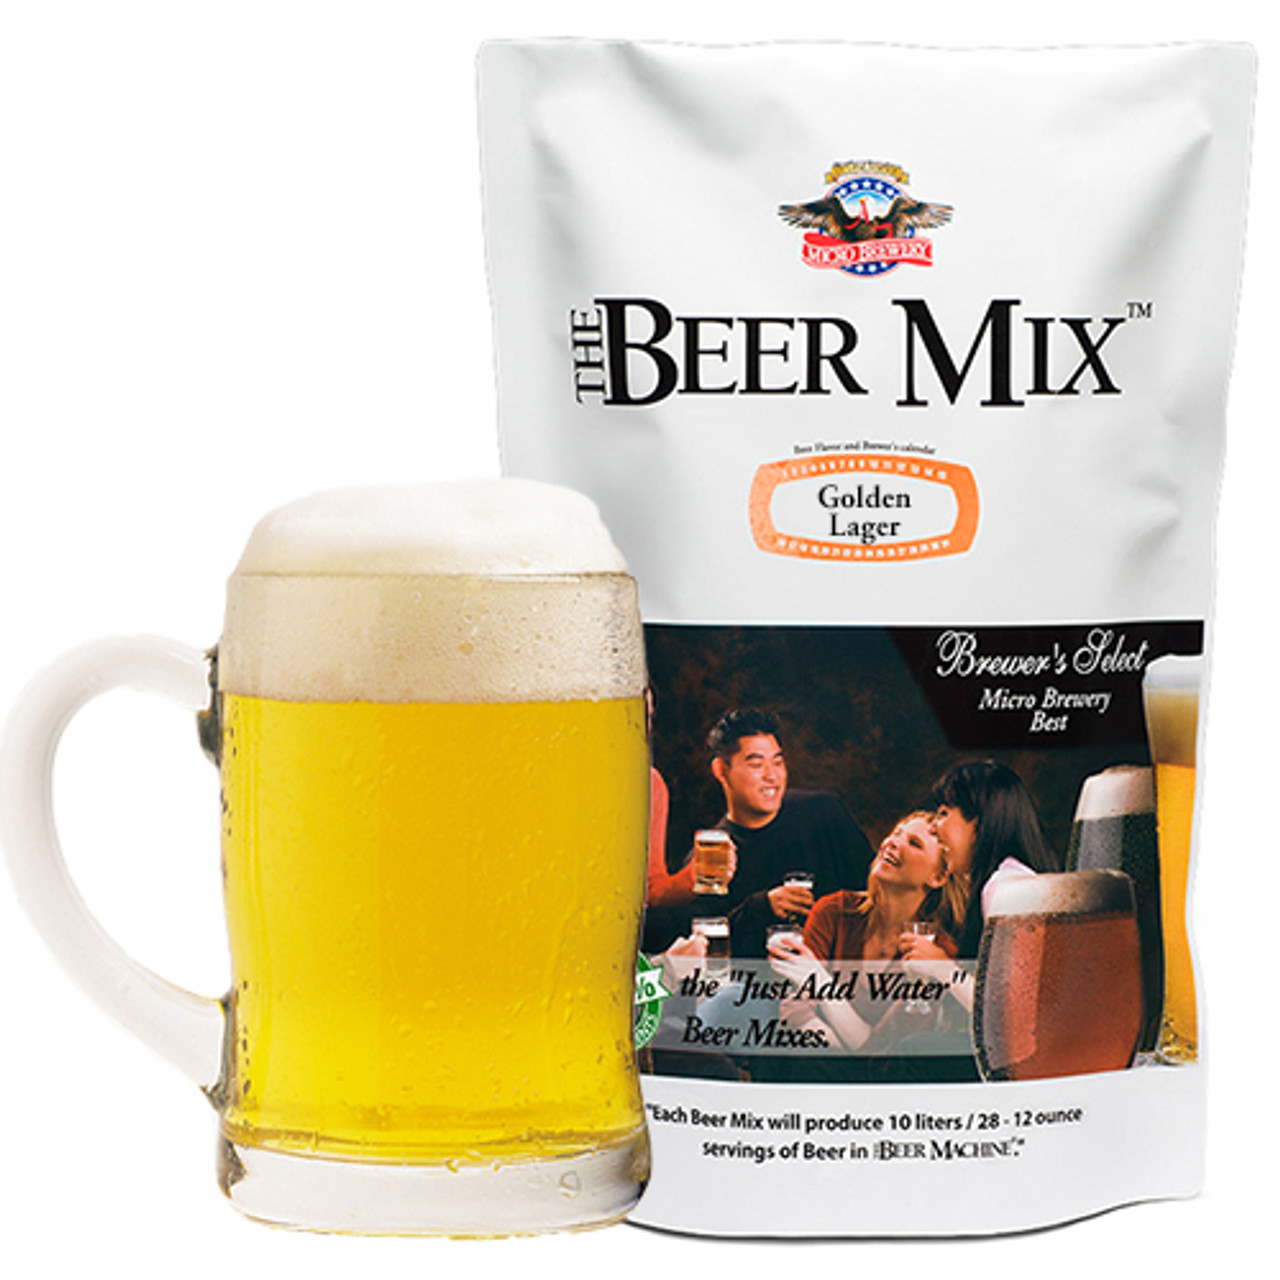 Beer mix. Beer Mix пиво. Солодовые экстракты Beer Mix (BEERMACHINE).